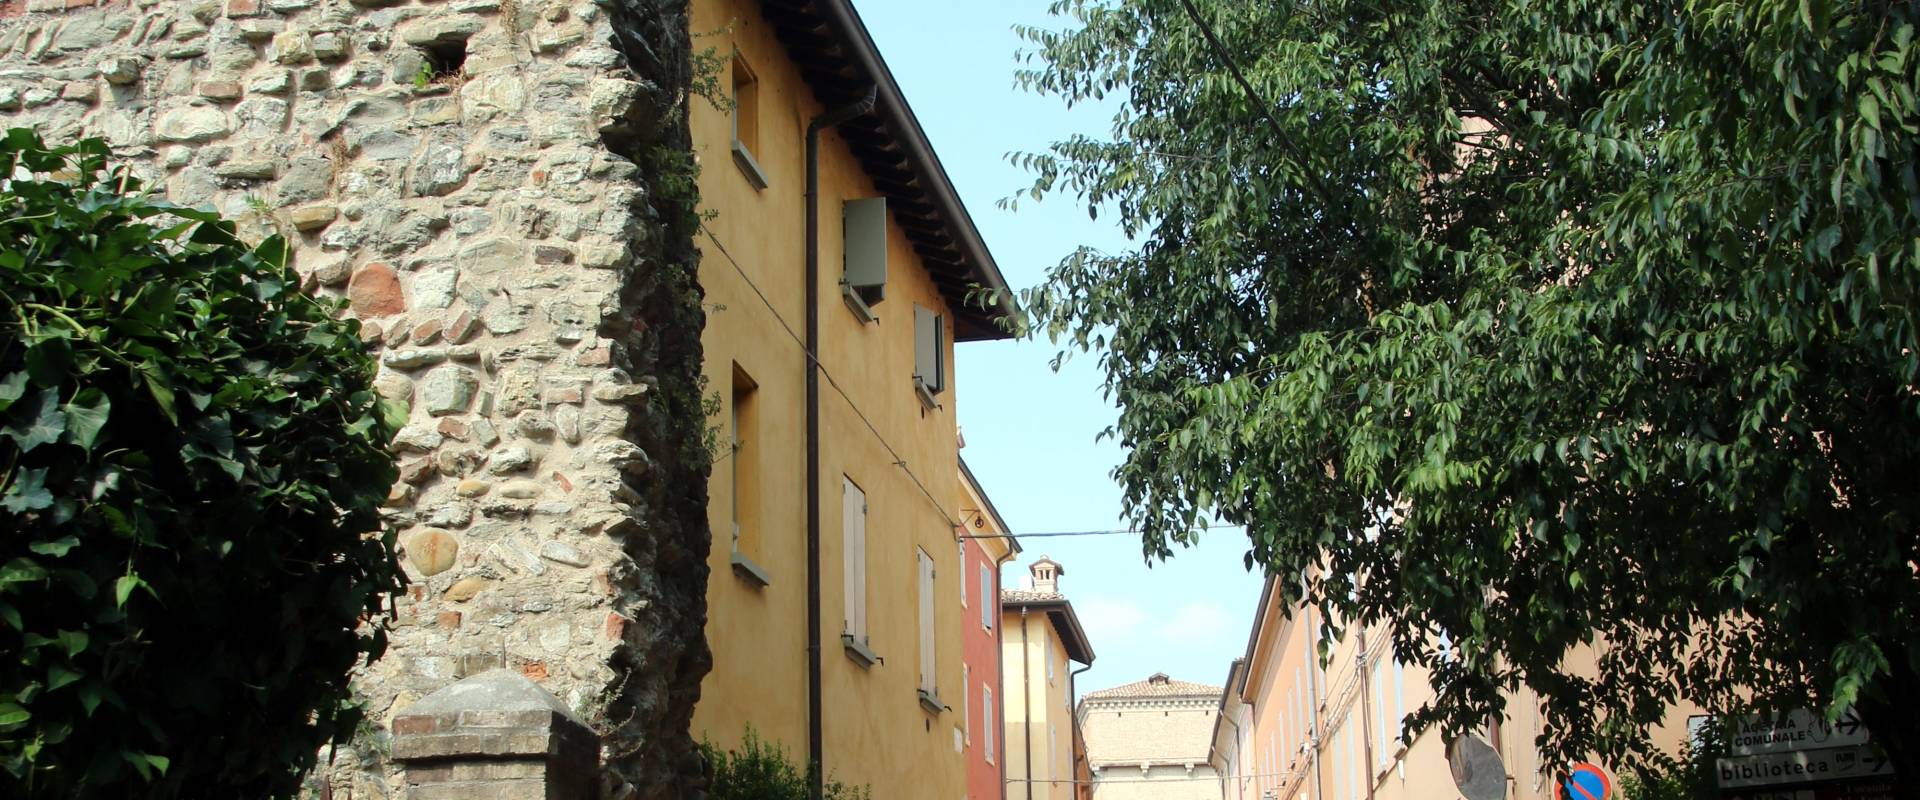 Antiche mura di Castelvetro di Modena 02 photo by Mongolo1984